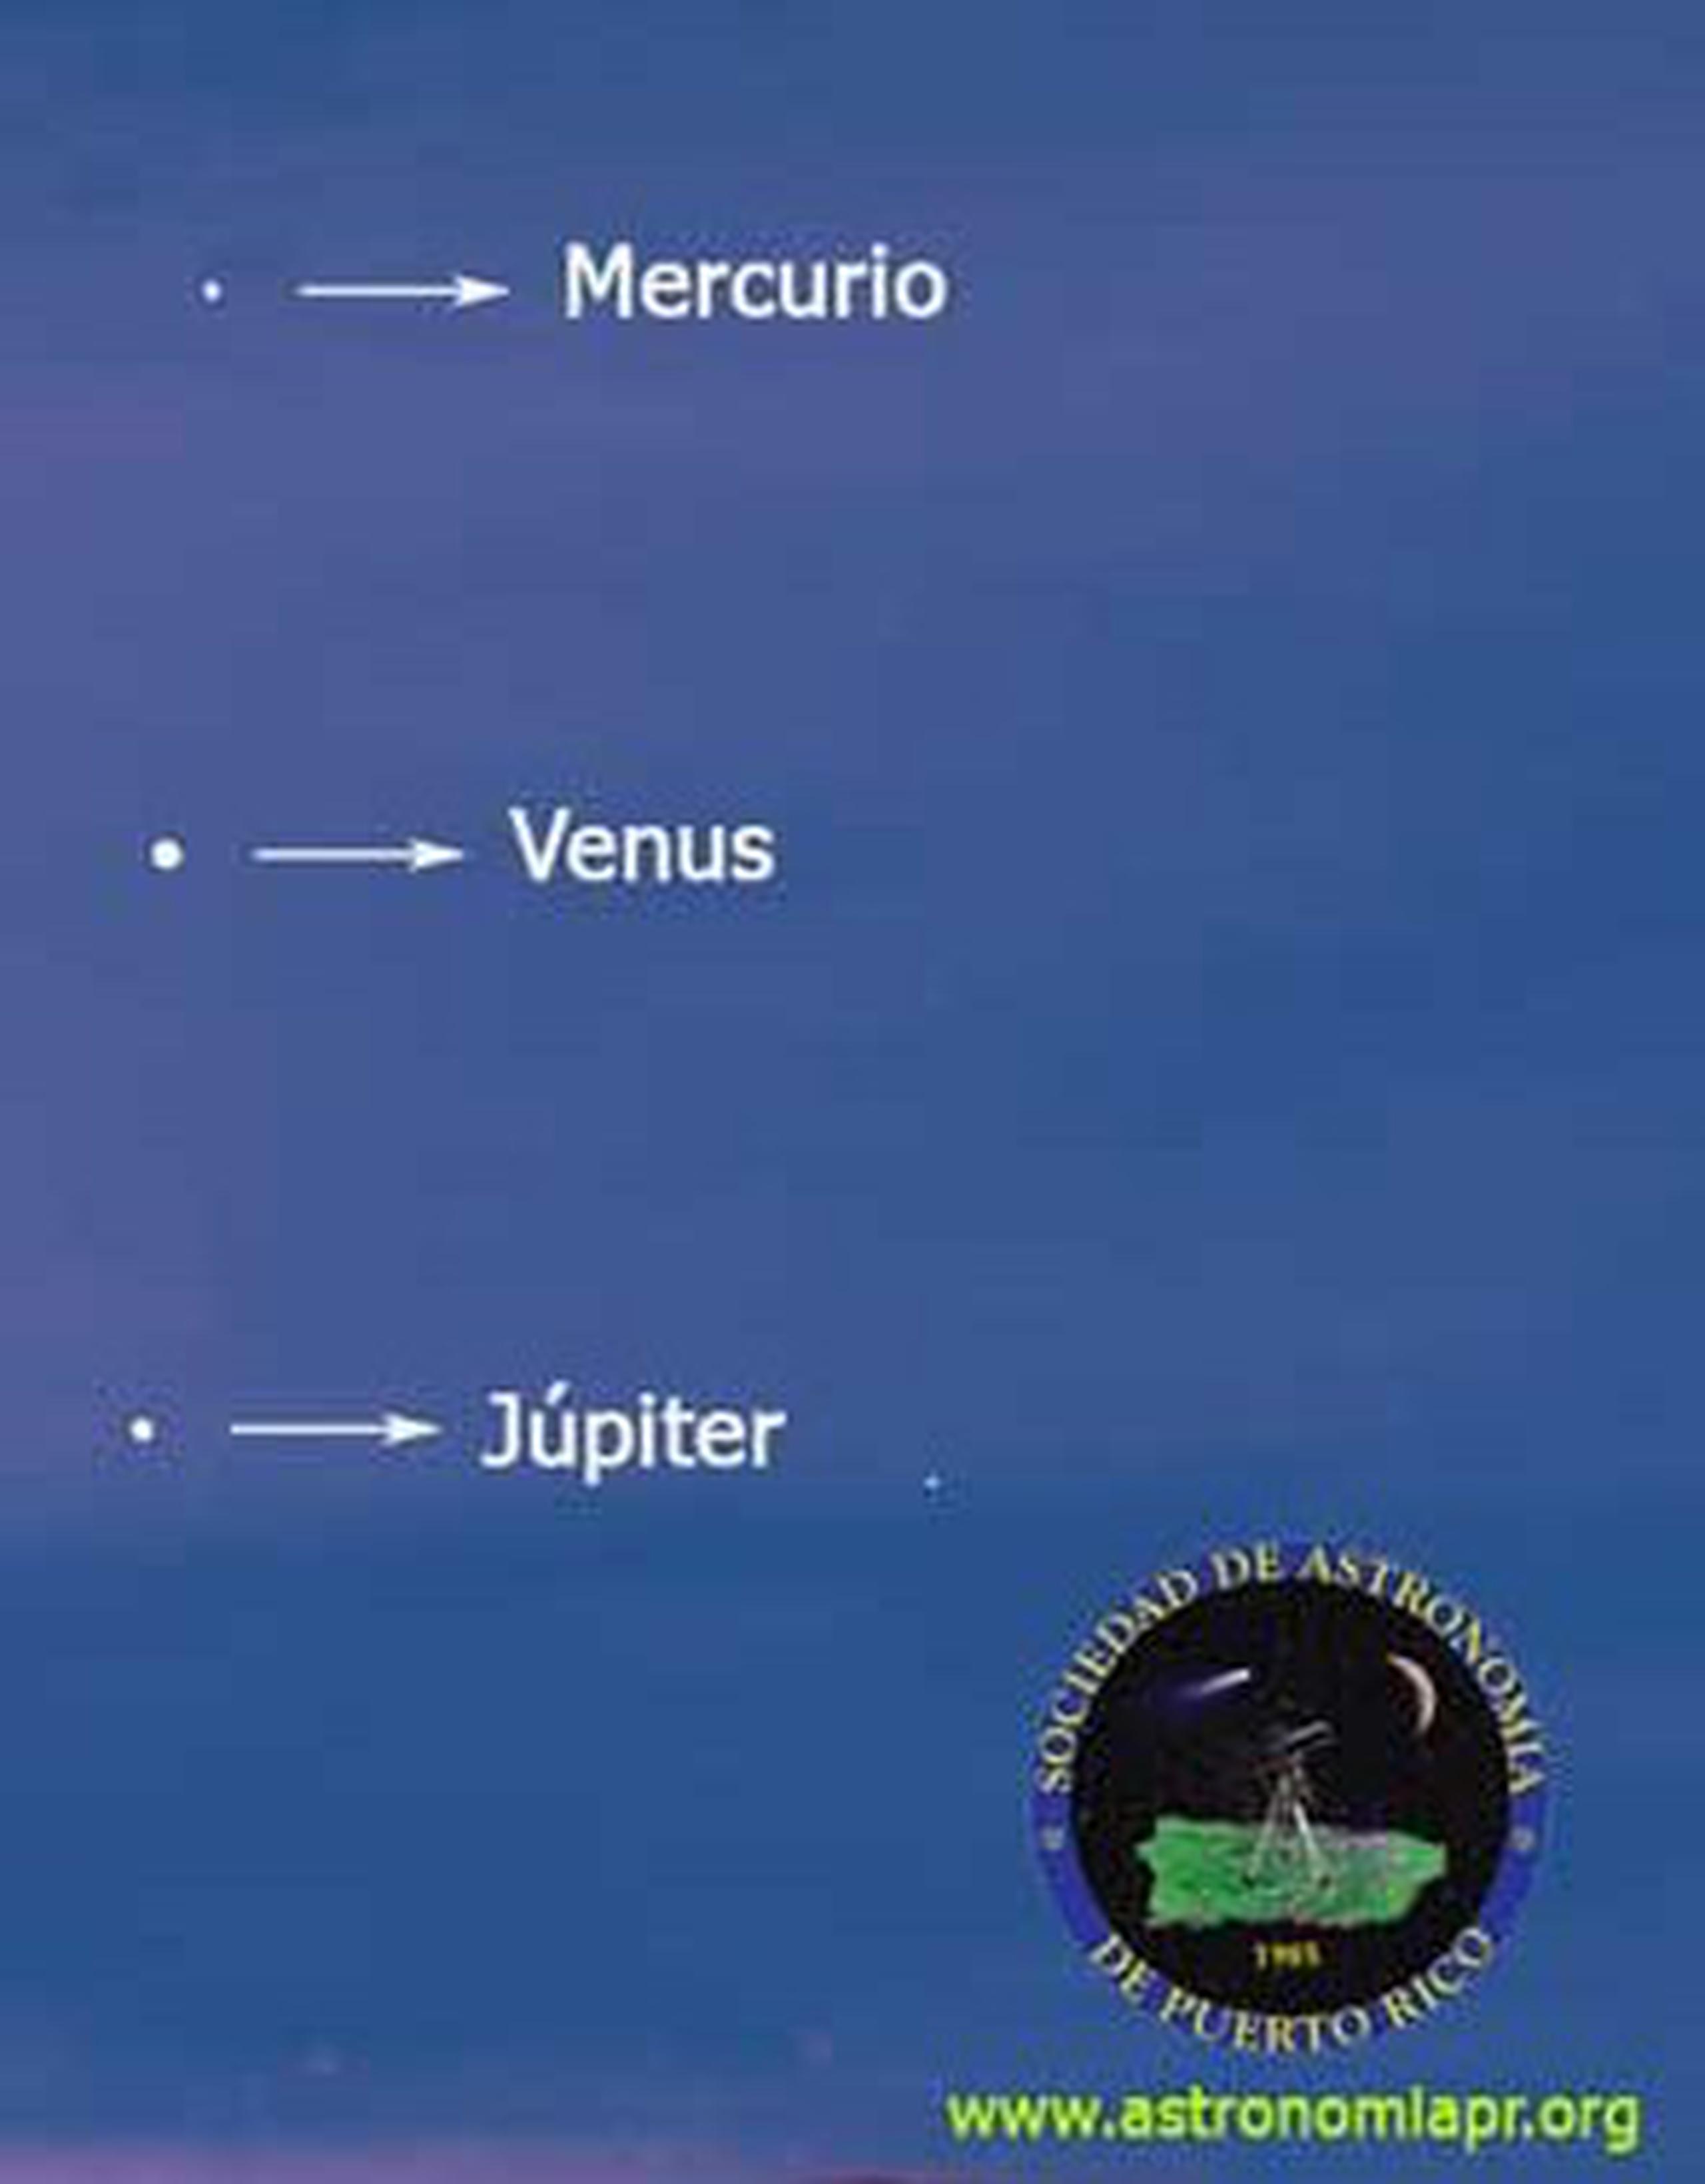 El sábado 1 de junio los planetas formarán una línea vertical ubicándose Mercurio en la parte más alta de la formación celeste, Venus en el centro y cerca al horizonte, el planeta Júpiter. (Sociedad de Astronomía de Puerto Rico, Inc.)